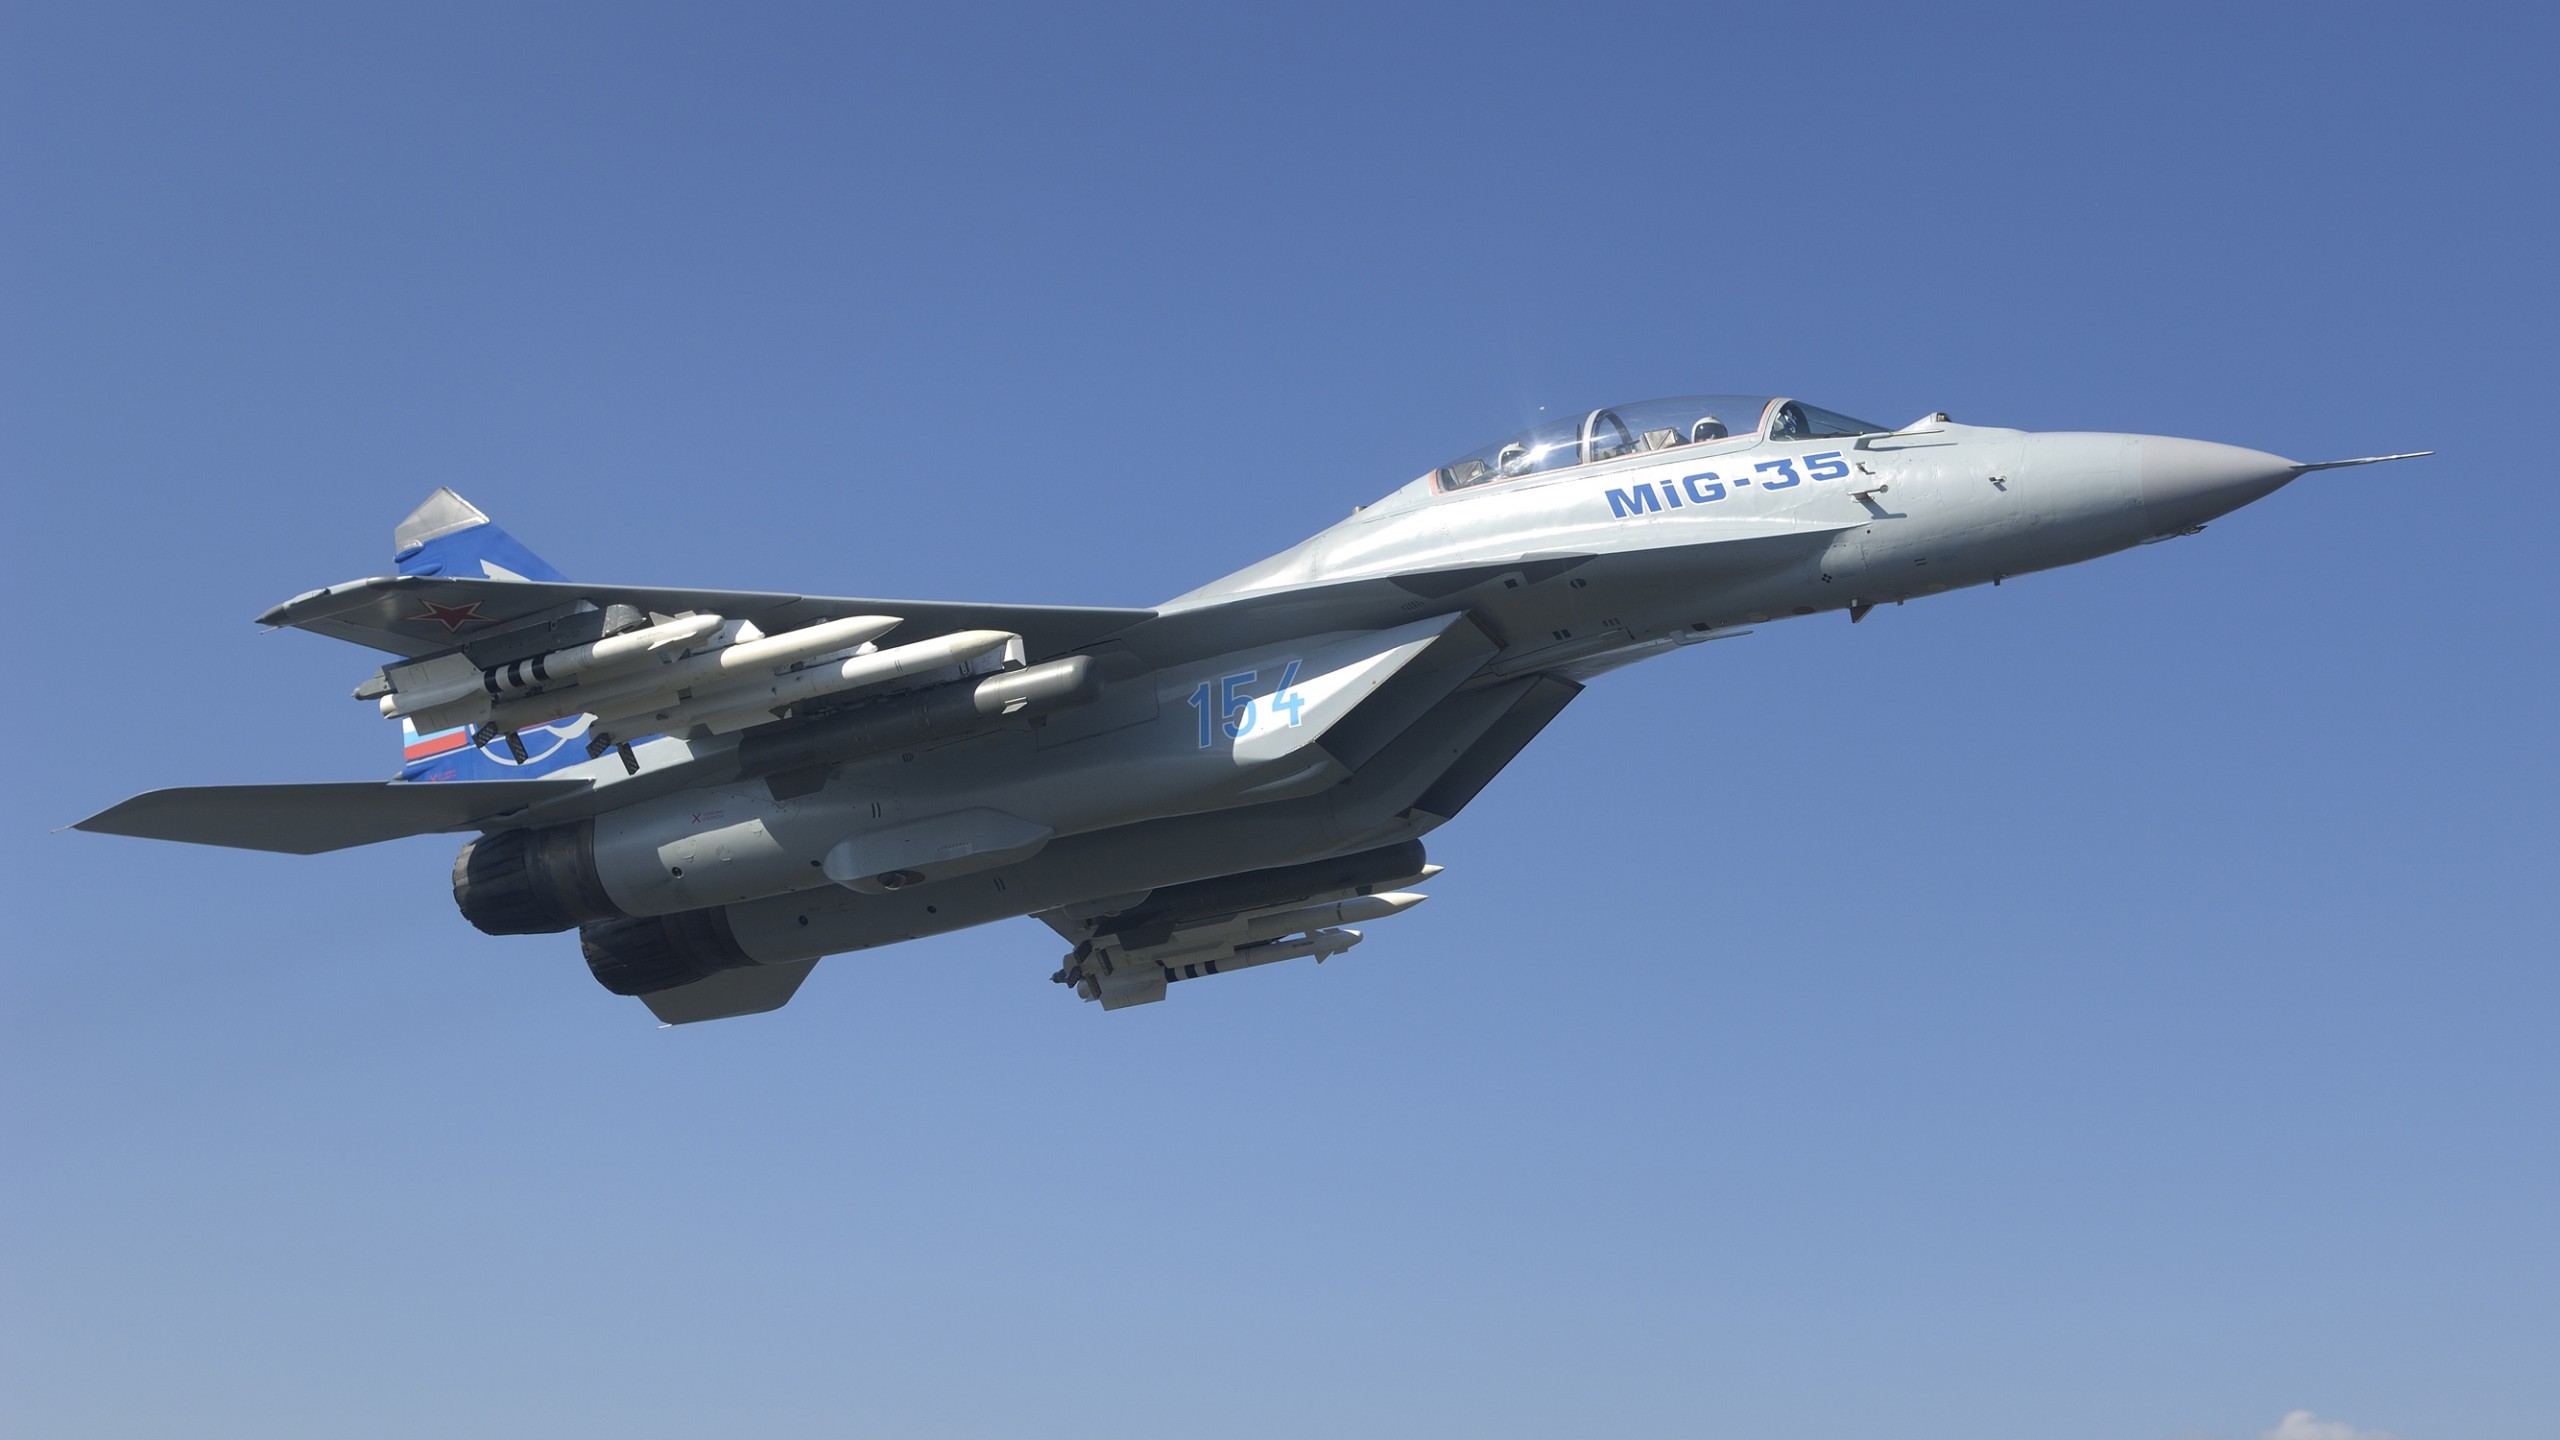 2560x1440 Military / Mikoyan MiG-35 Wallpaper